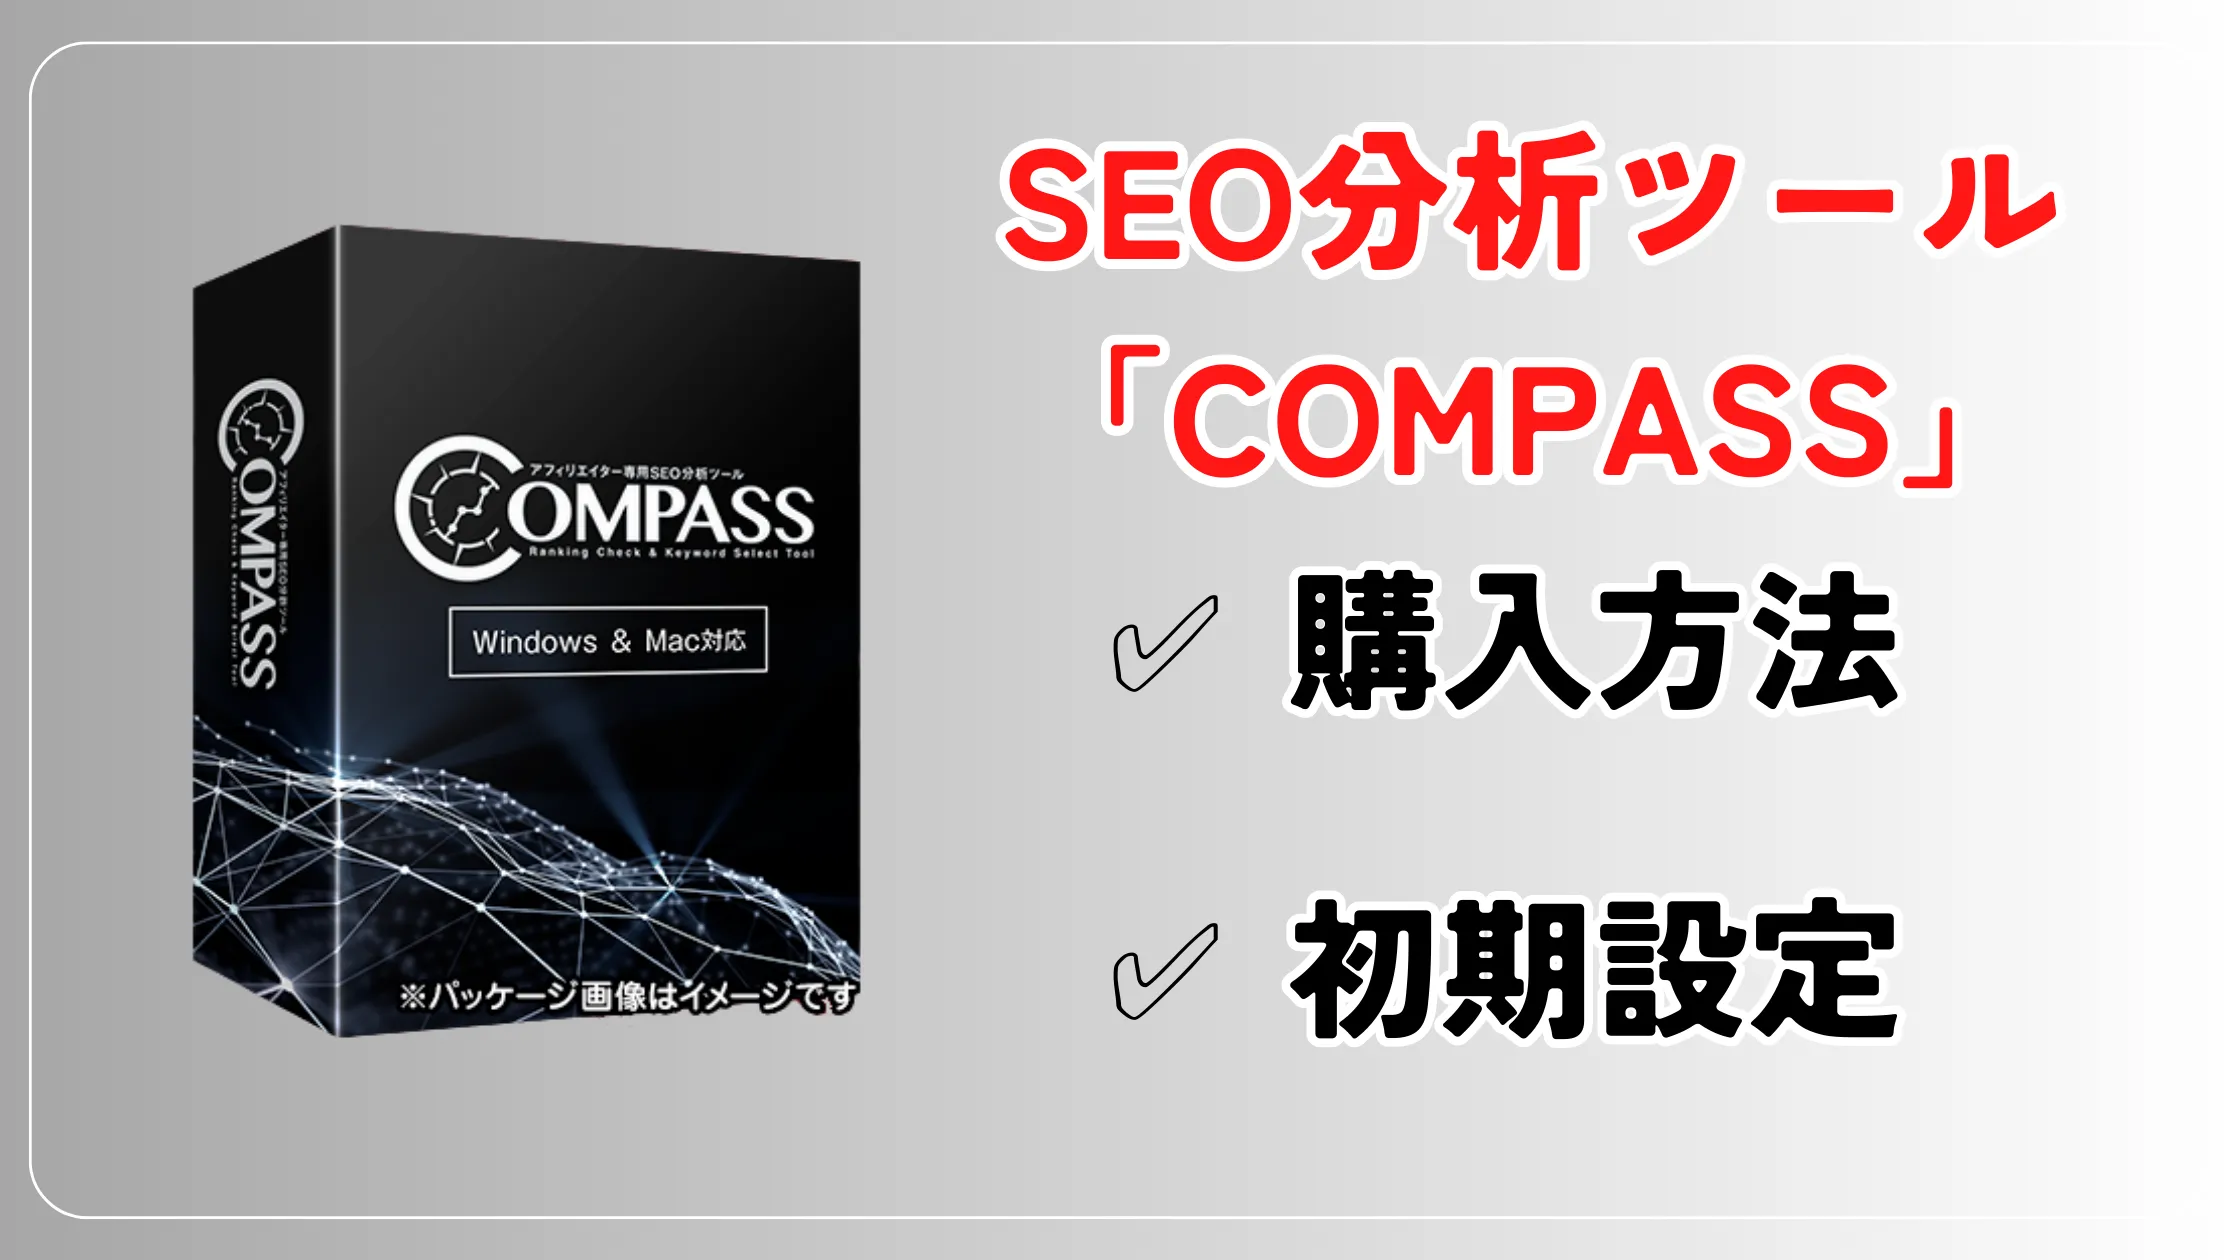 【2023年】SEO分析ツール『COMPASS』の購入と初期設定の手順解説